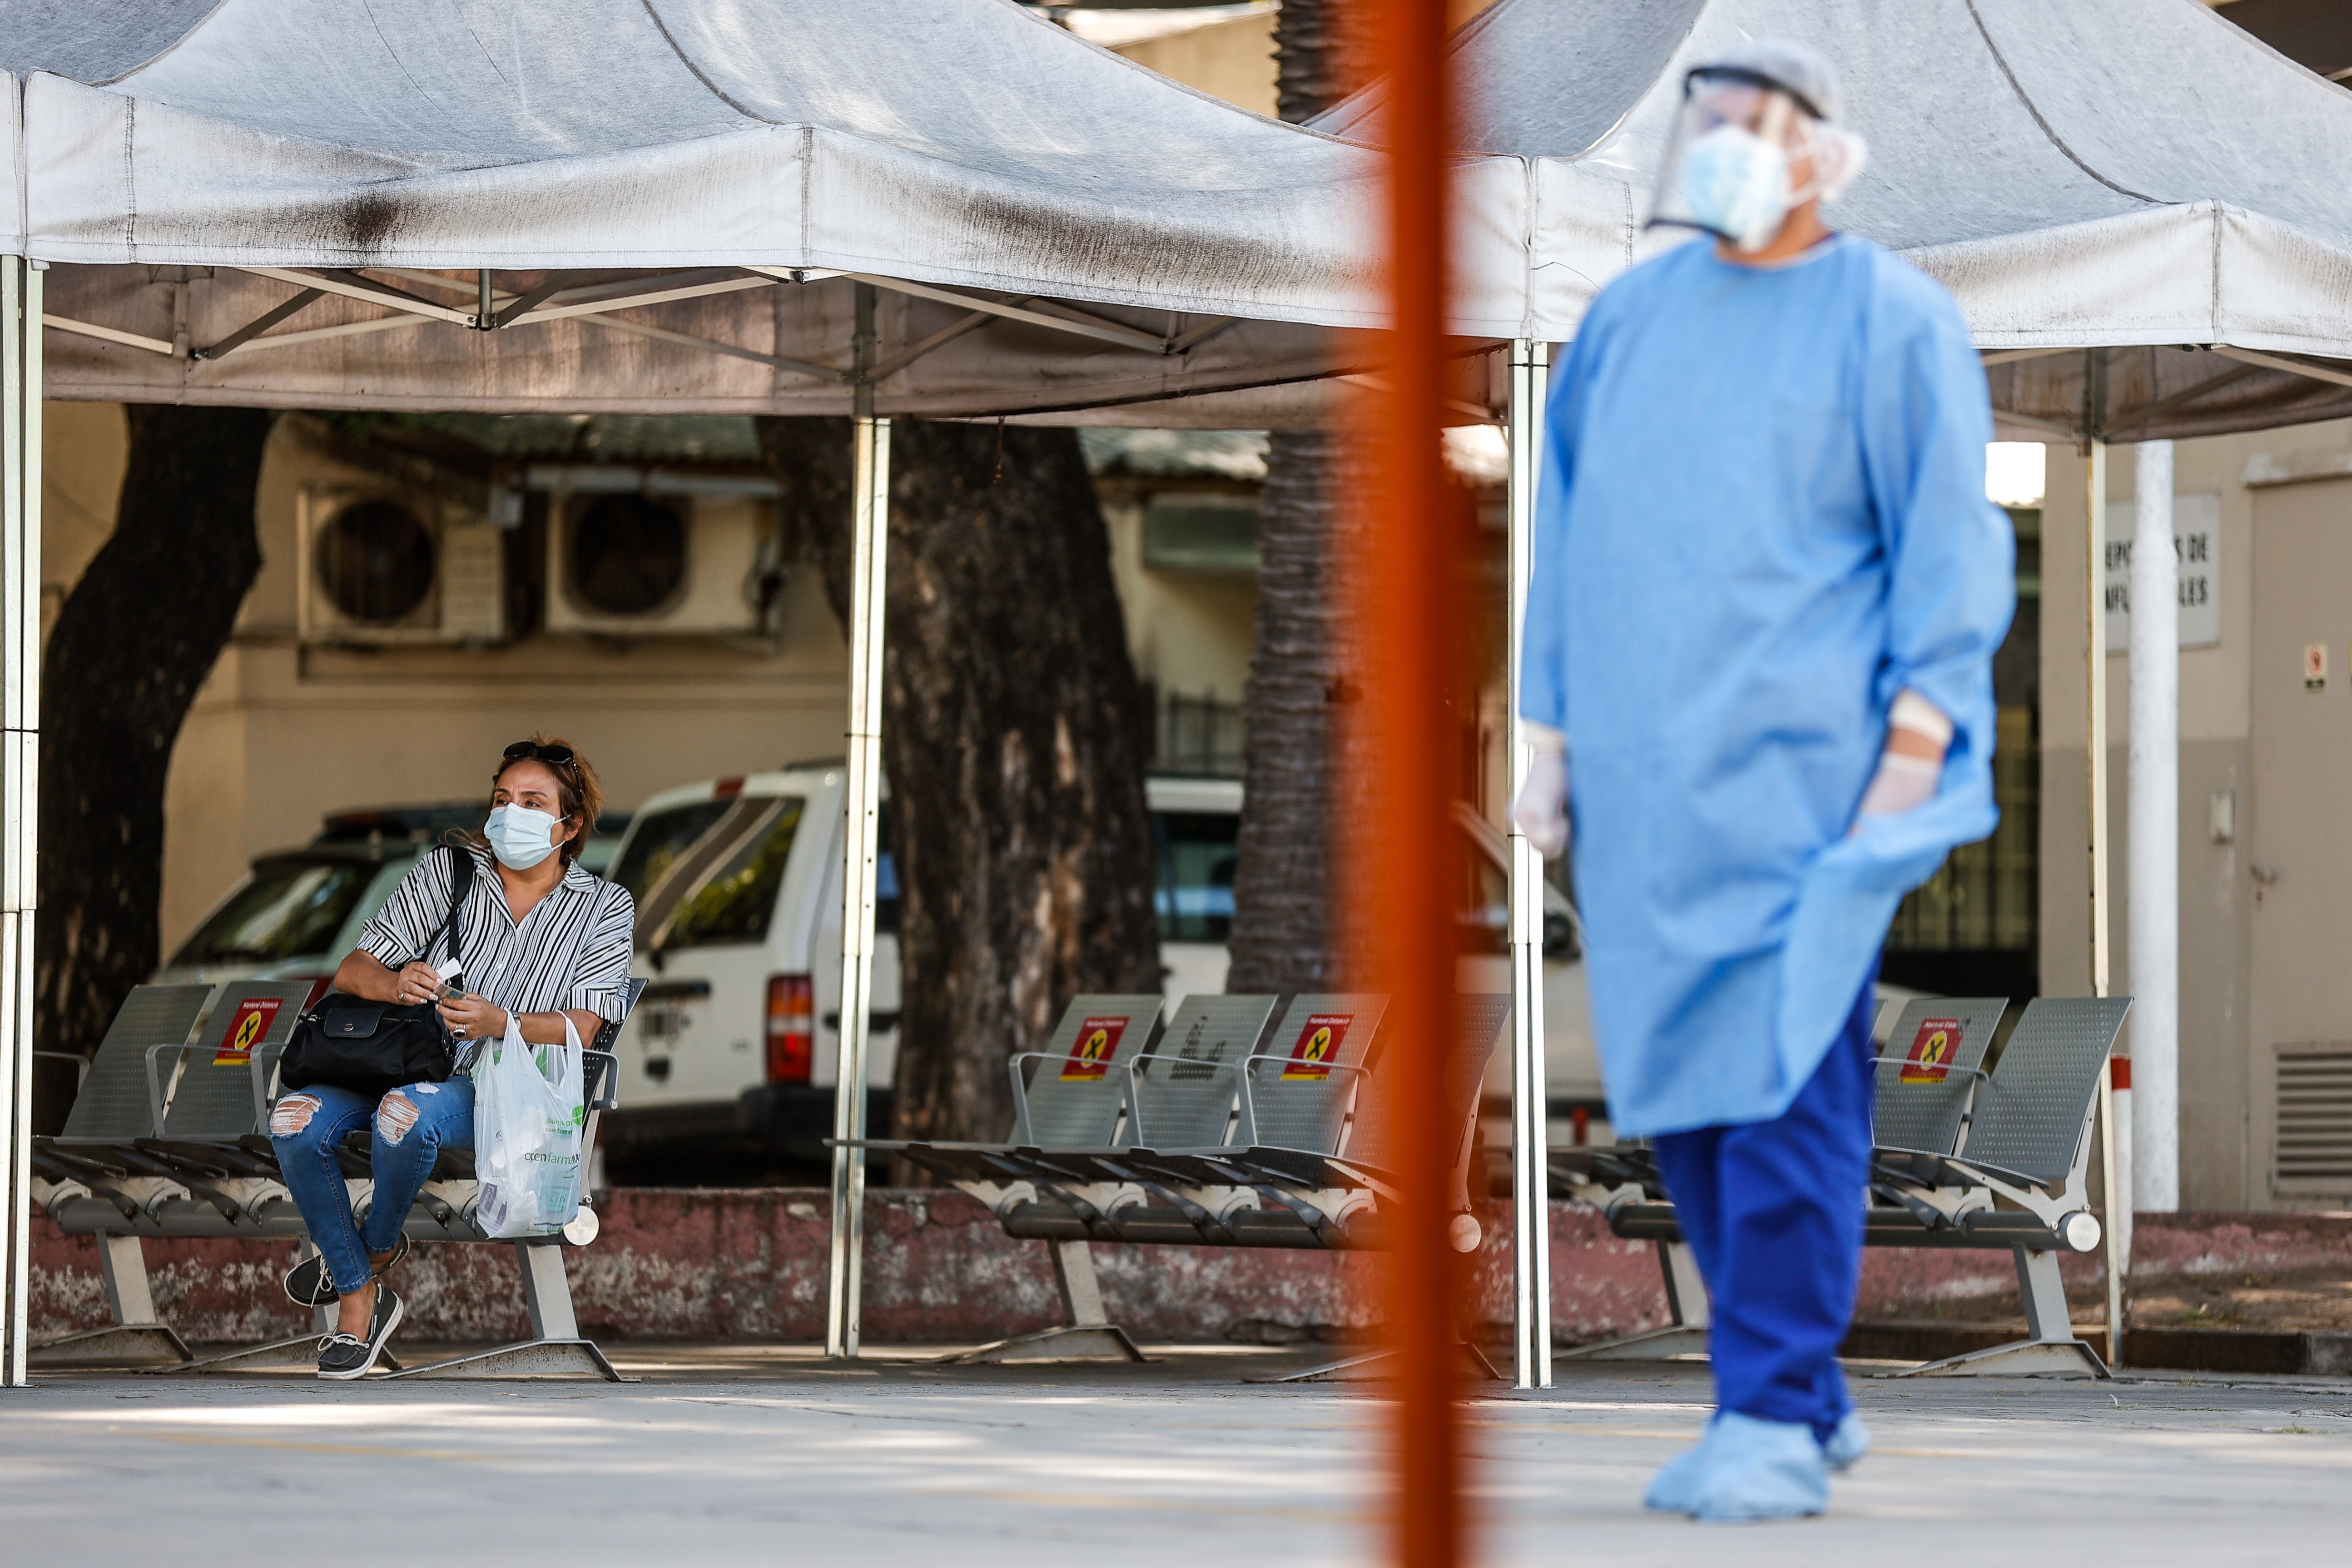 América despide al 2021 como la región más afectada por la pandemia y con el mayor repunte de contagios

